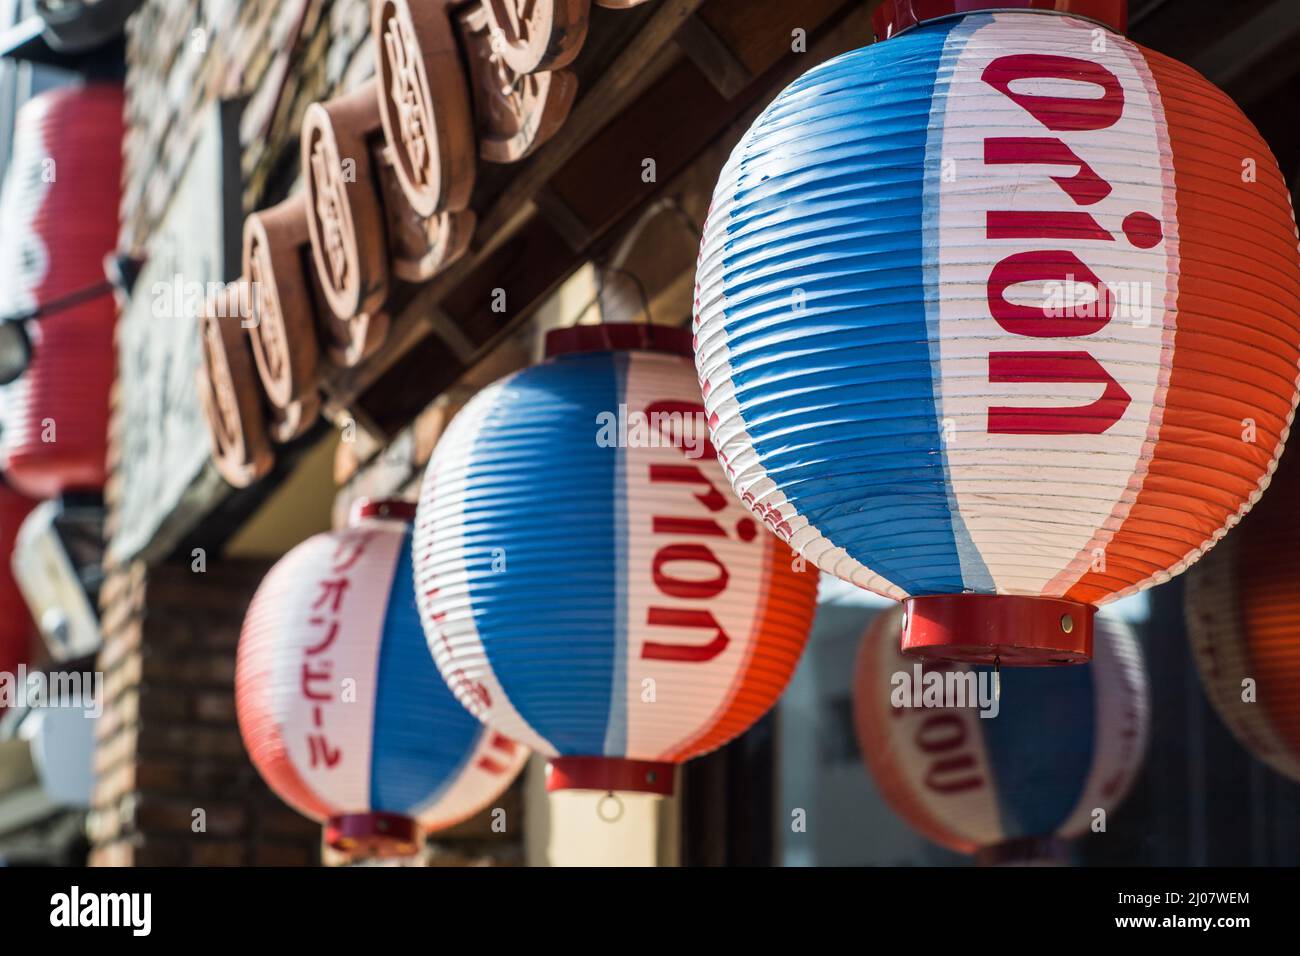 Primer plano de linternas japonesas de papel colgante rojo, azul y blanco que promueven la cerveza Orión fuera de un restaurante de Okinawa en Nara, Japón Foto de stock